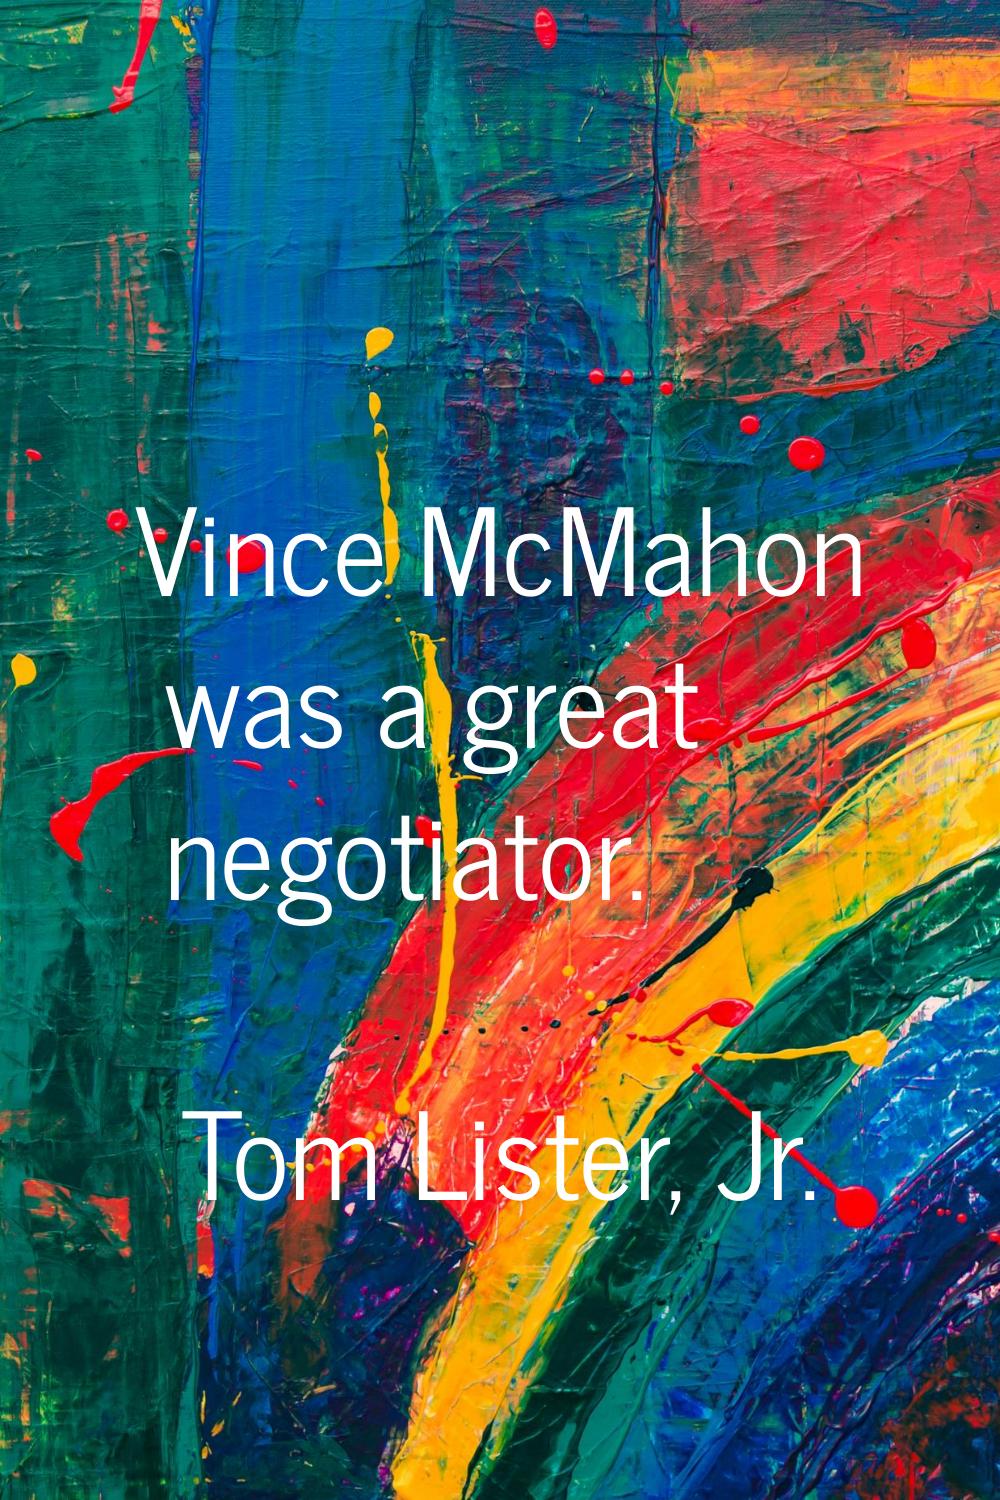 Vince McMahon was a great negotiator.